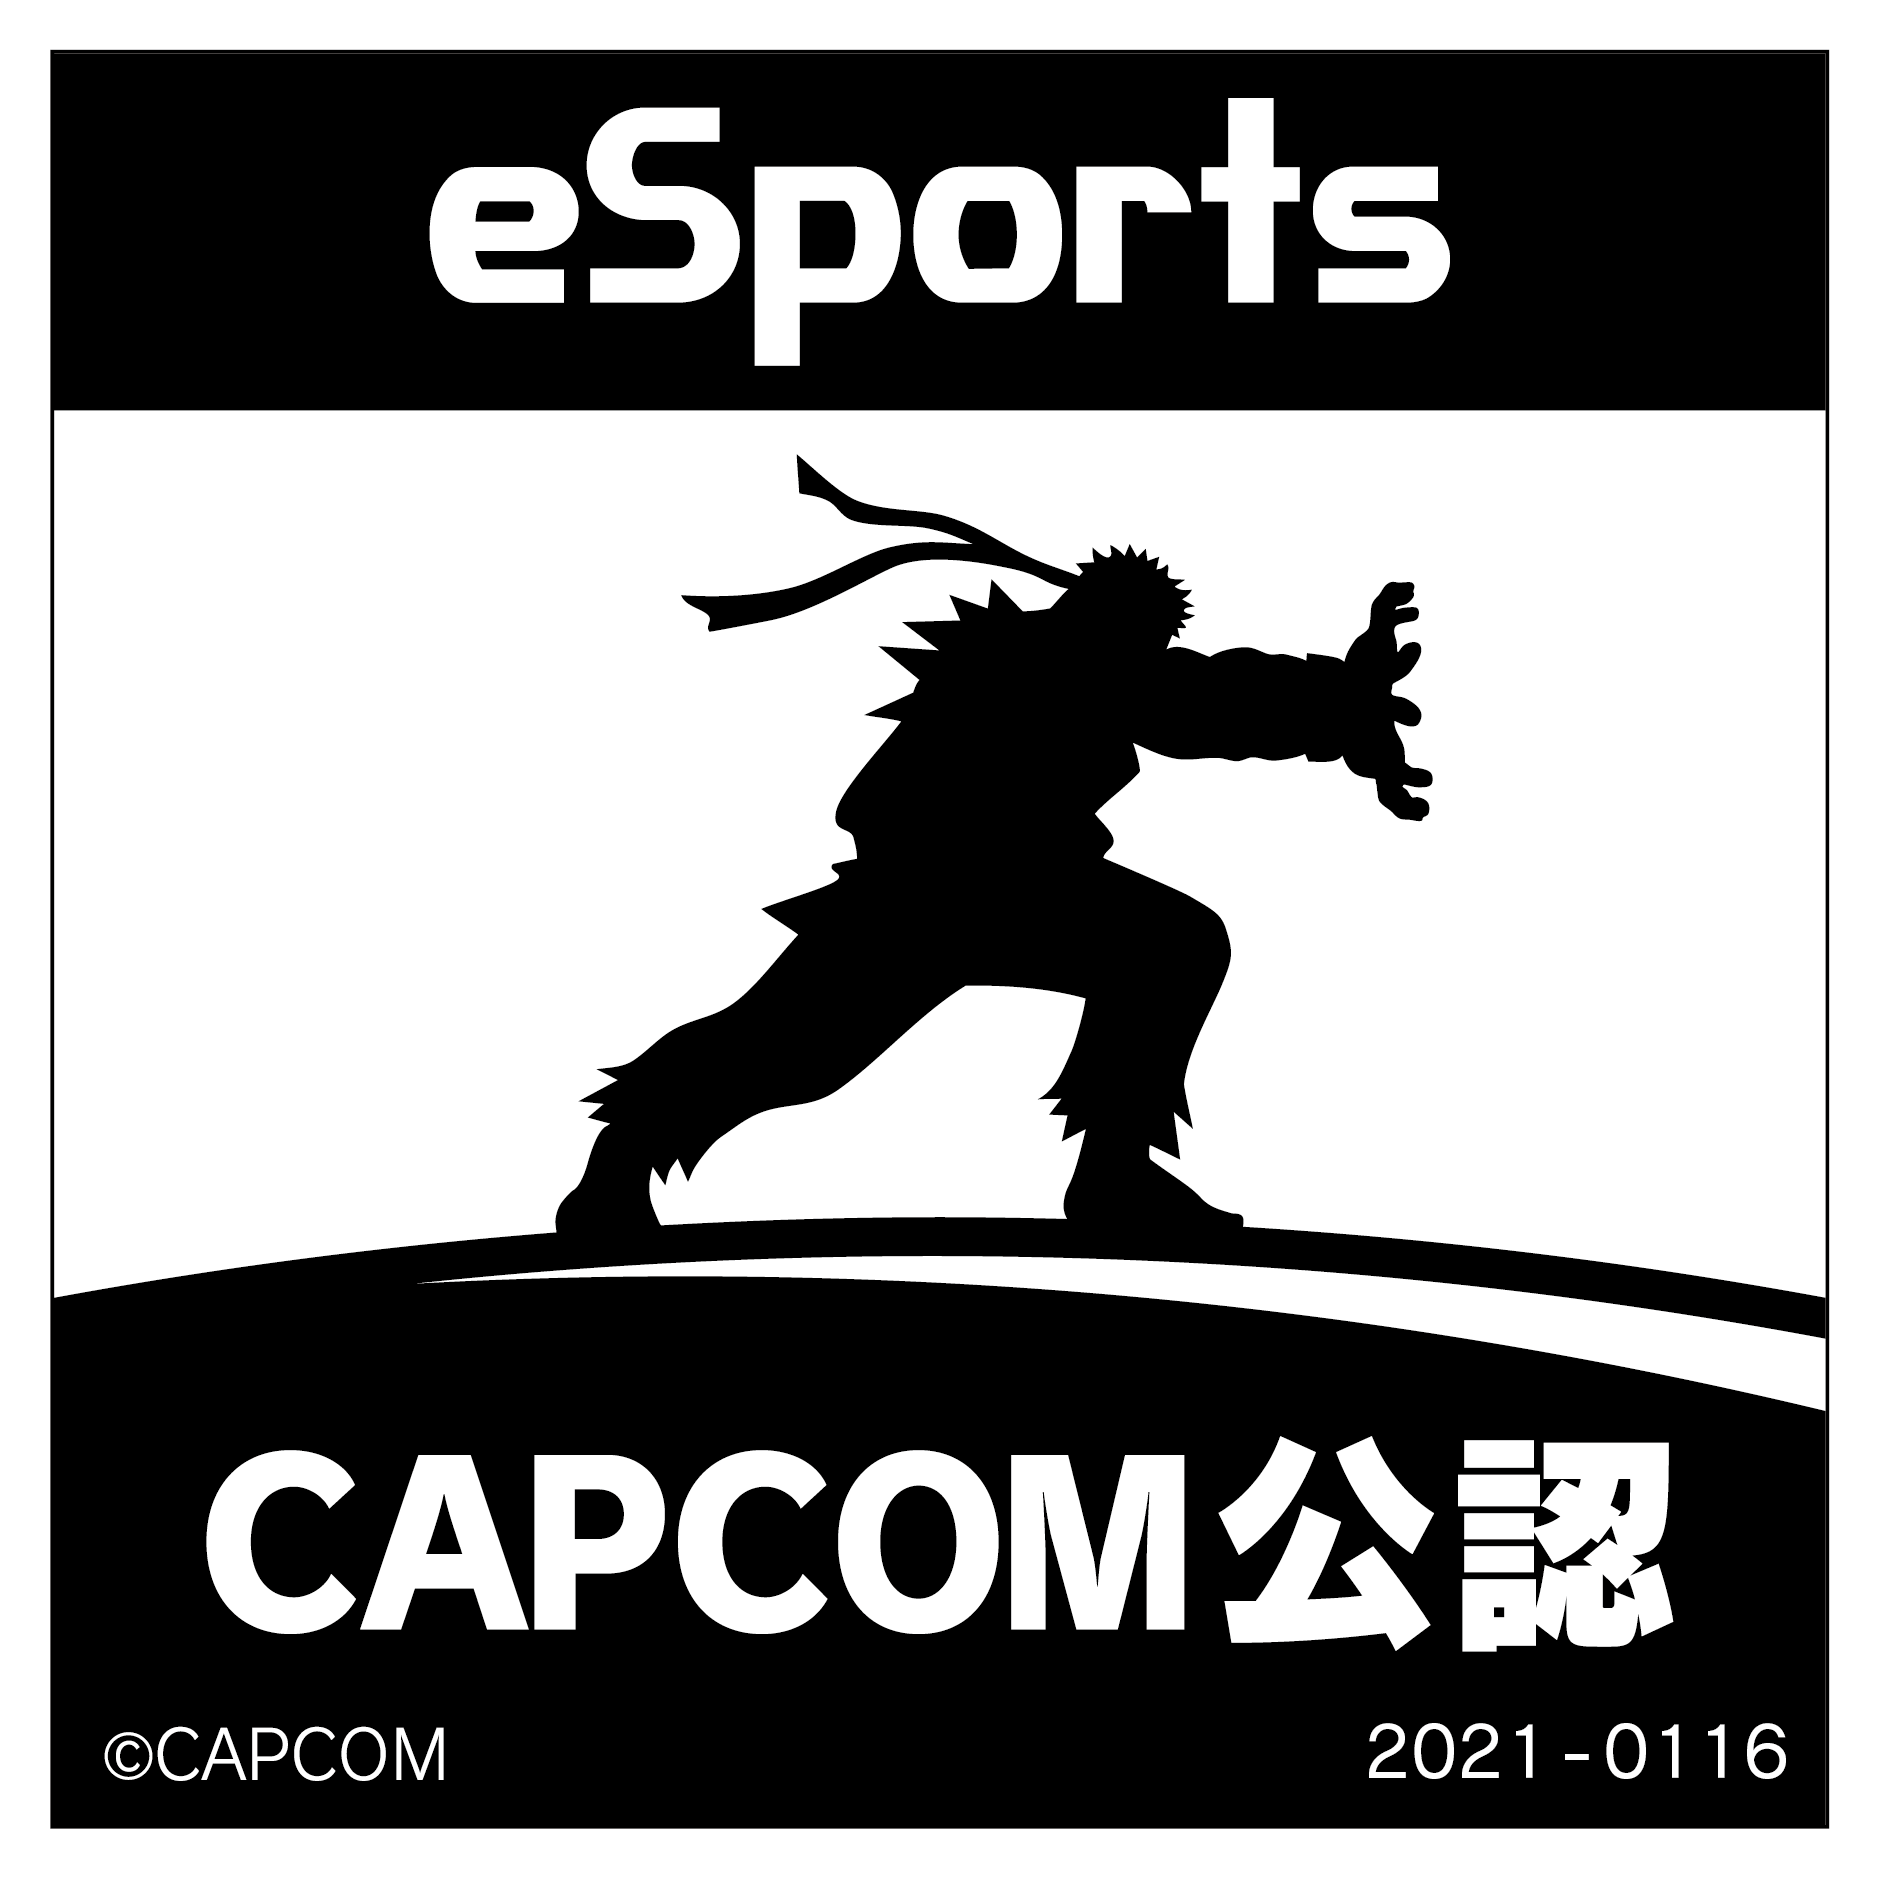 eSports CAPCOM公認 2021-0116